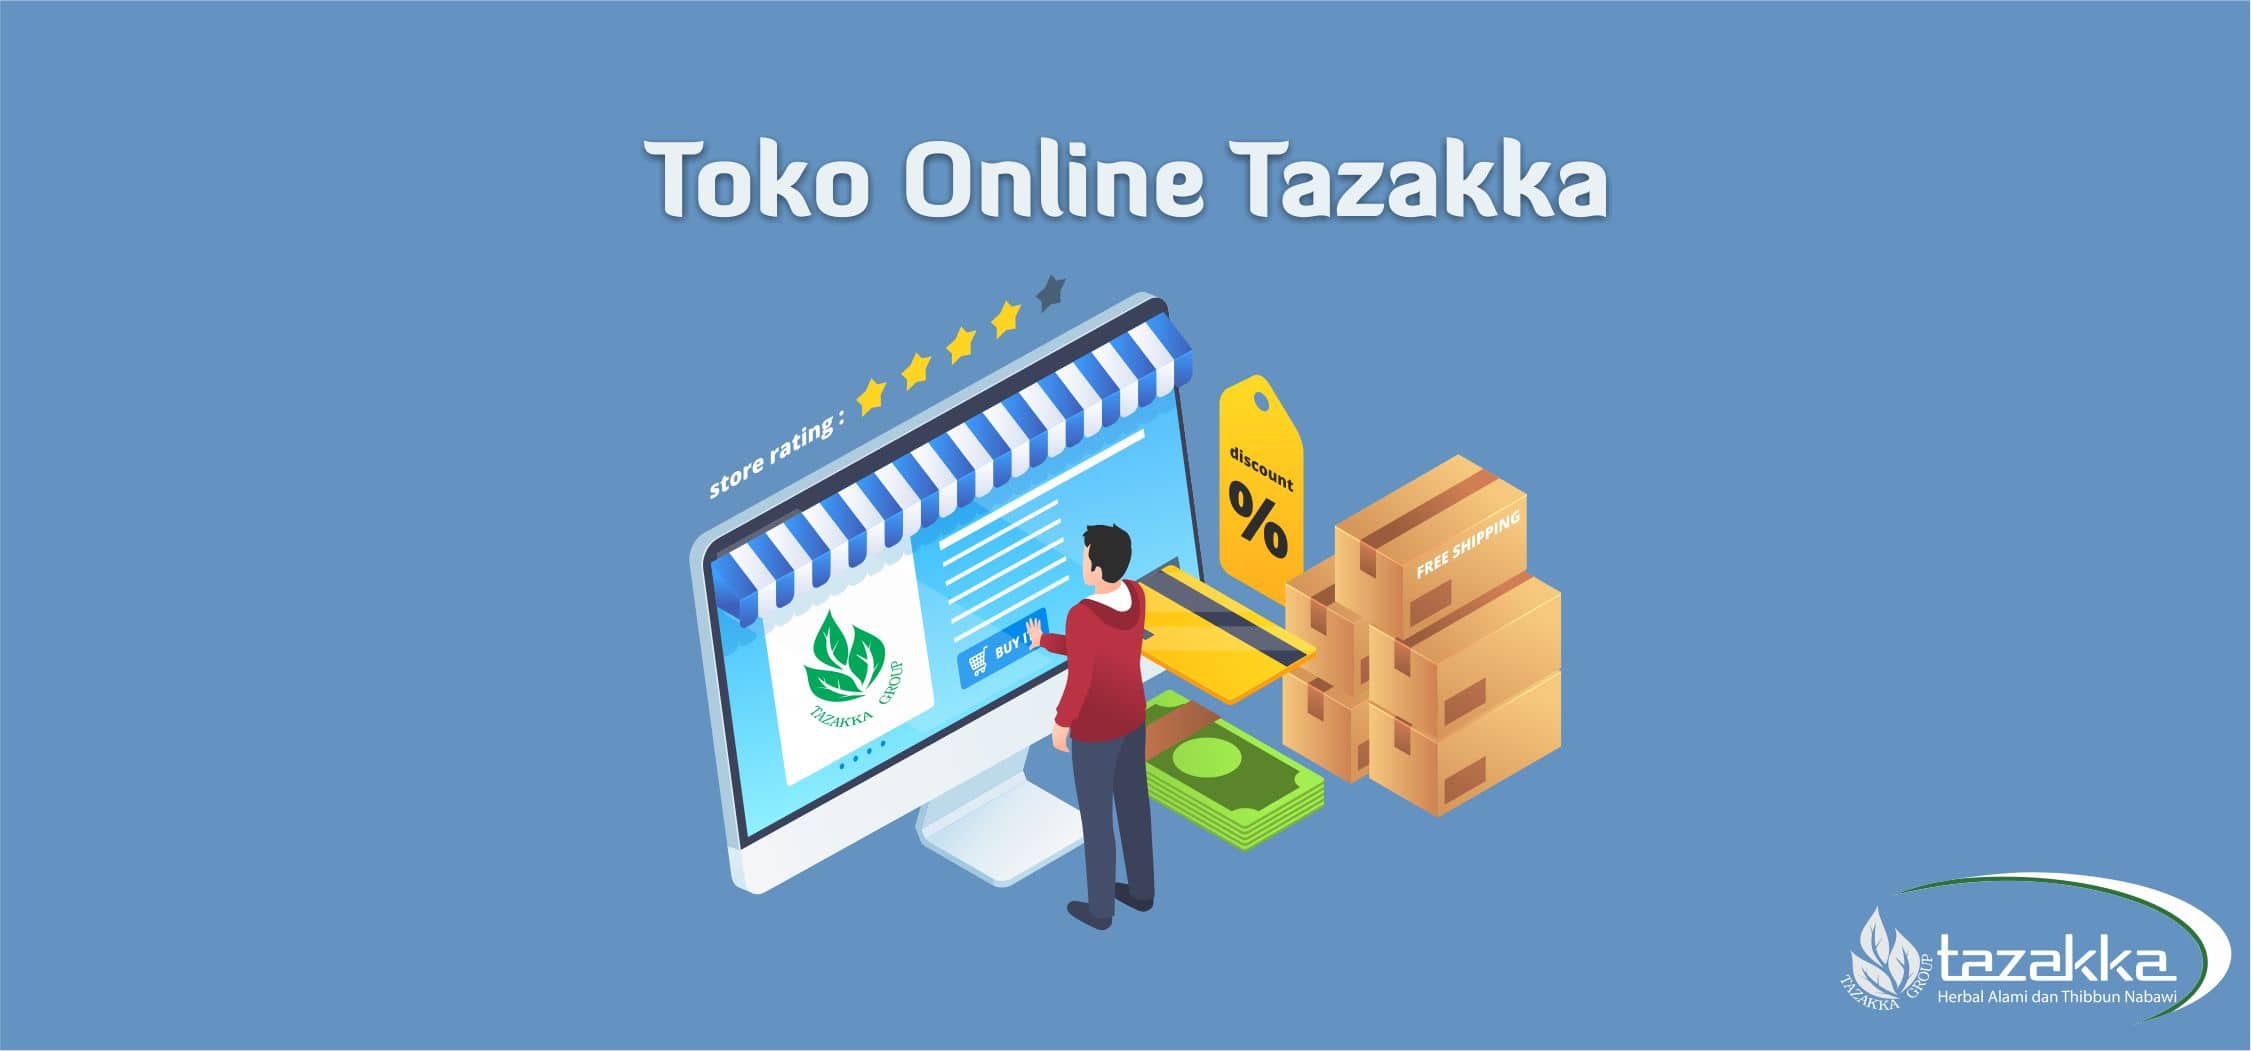 contoh foto gambar banner website tazakka banner informasi seputar toko online olshop ecommerce herbal tazakka dan cara memesan produk secara online dengan smartphone internet.